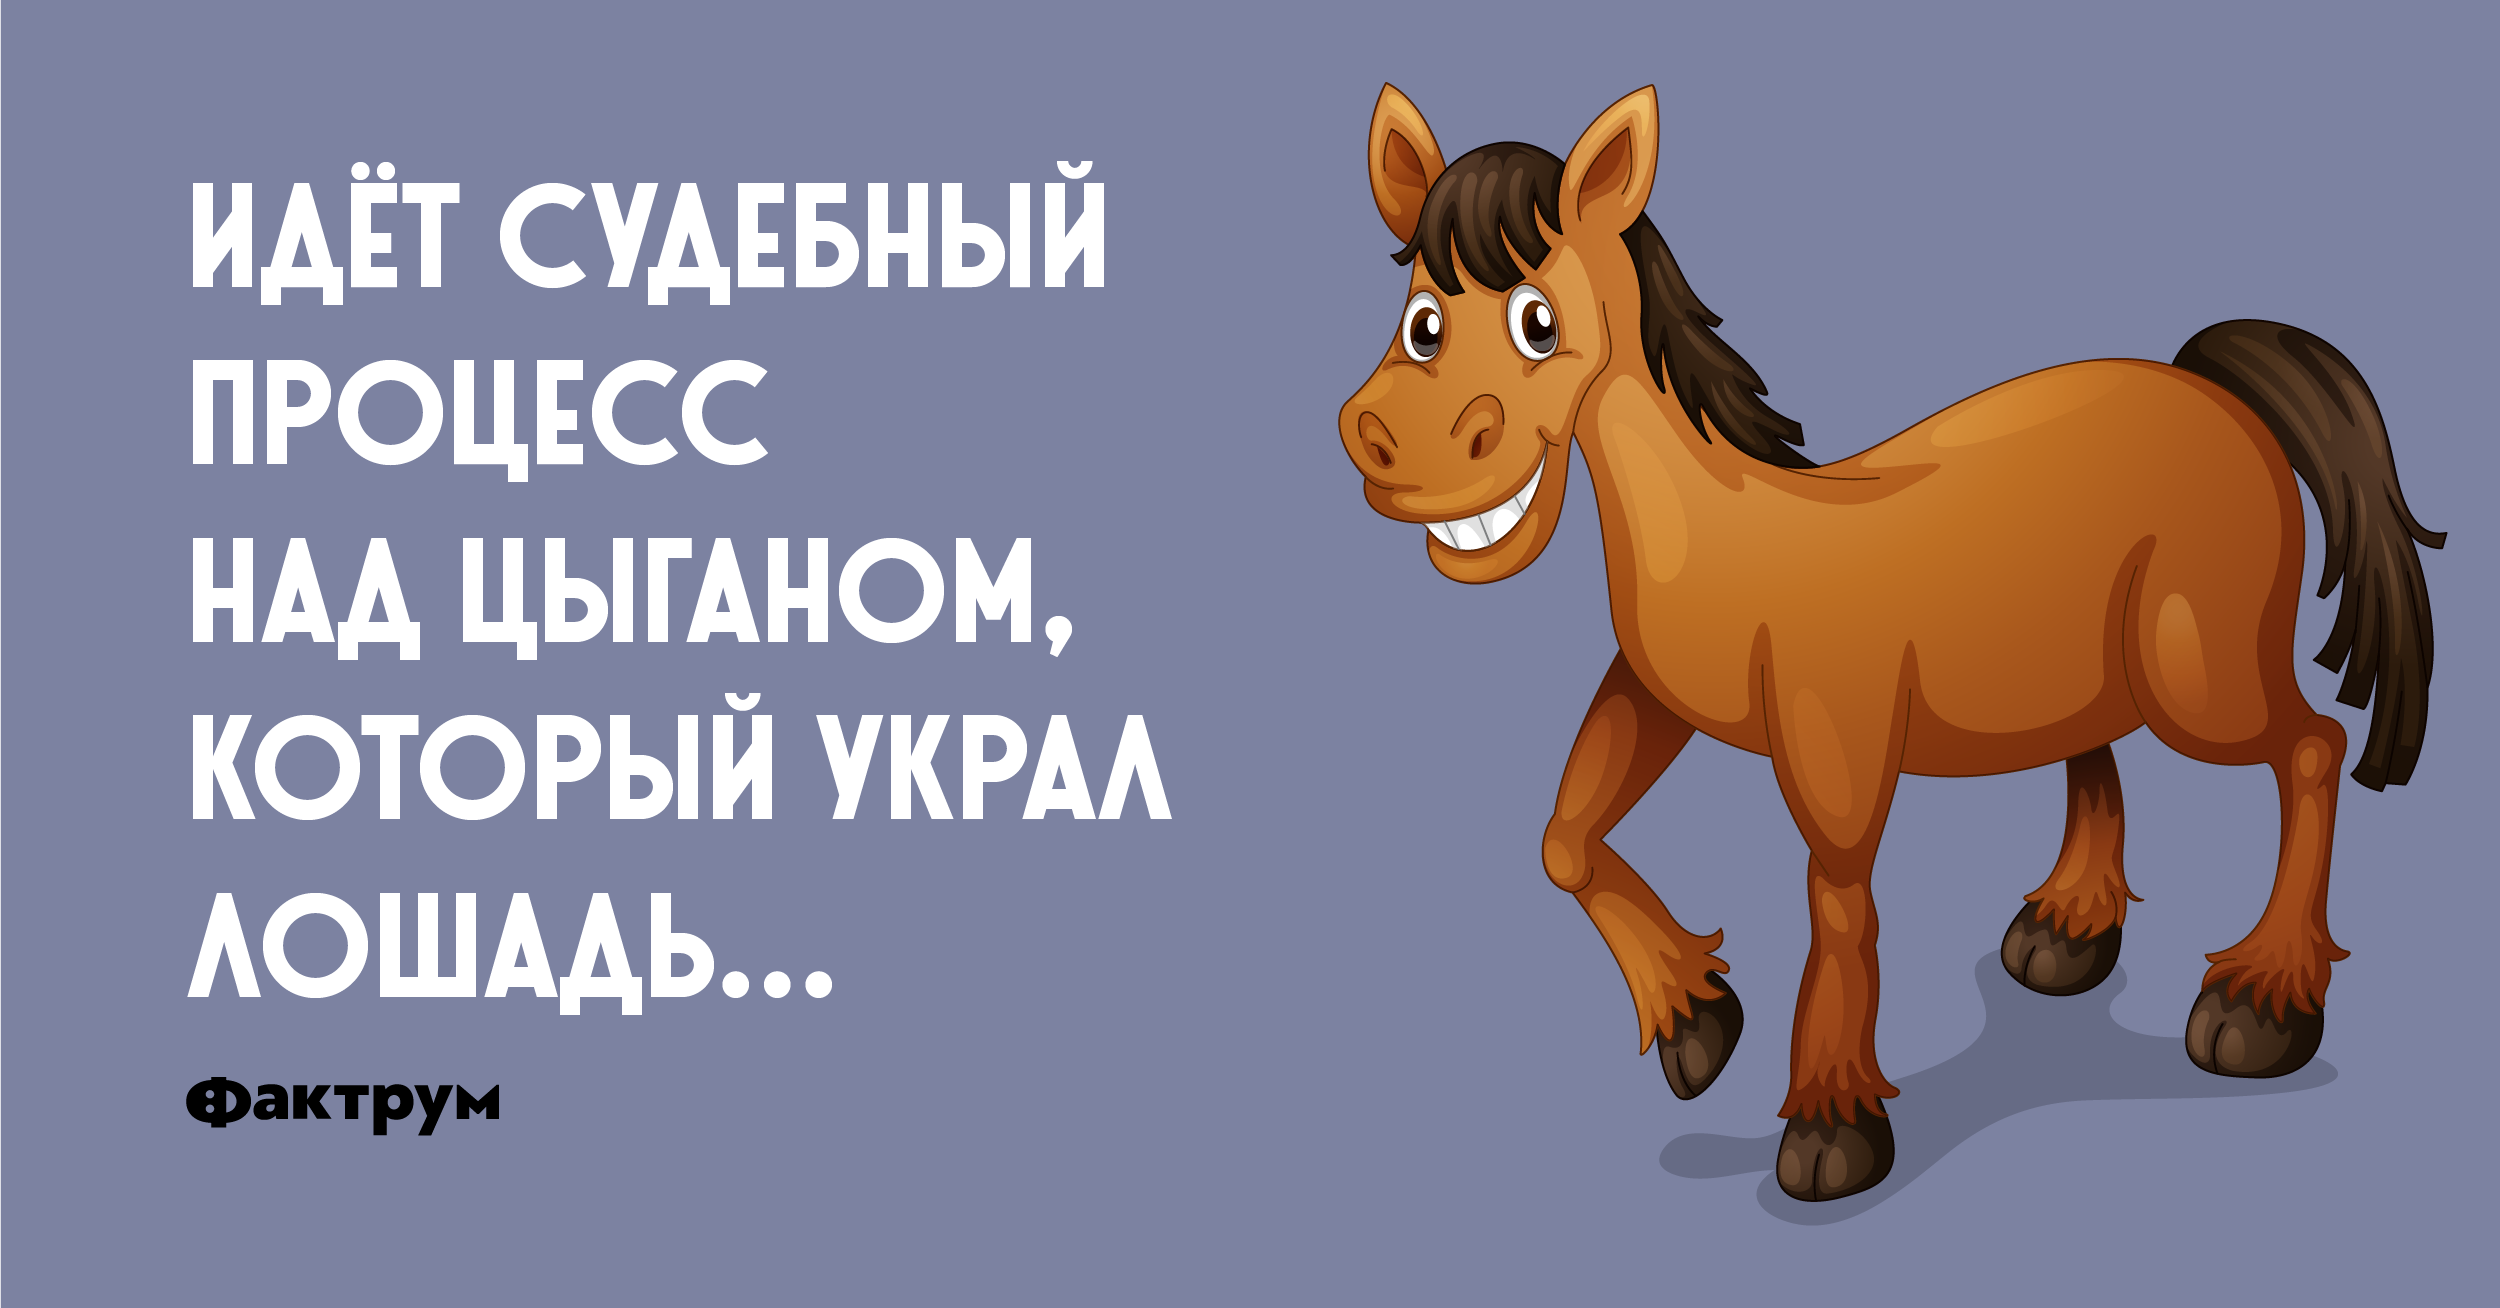 Каждый день жрешь коньяк как лошадь. Цыгане воруют лошадей. Цыган ворует лошадь и лошадь. Украли лошадь. Цыгане выкрали коня.